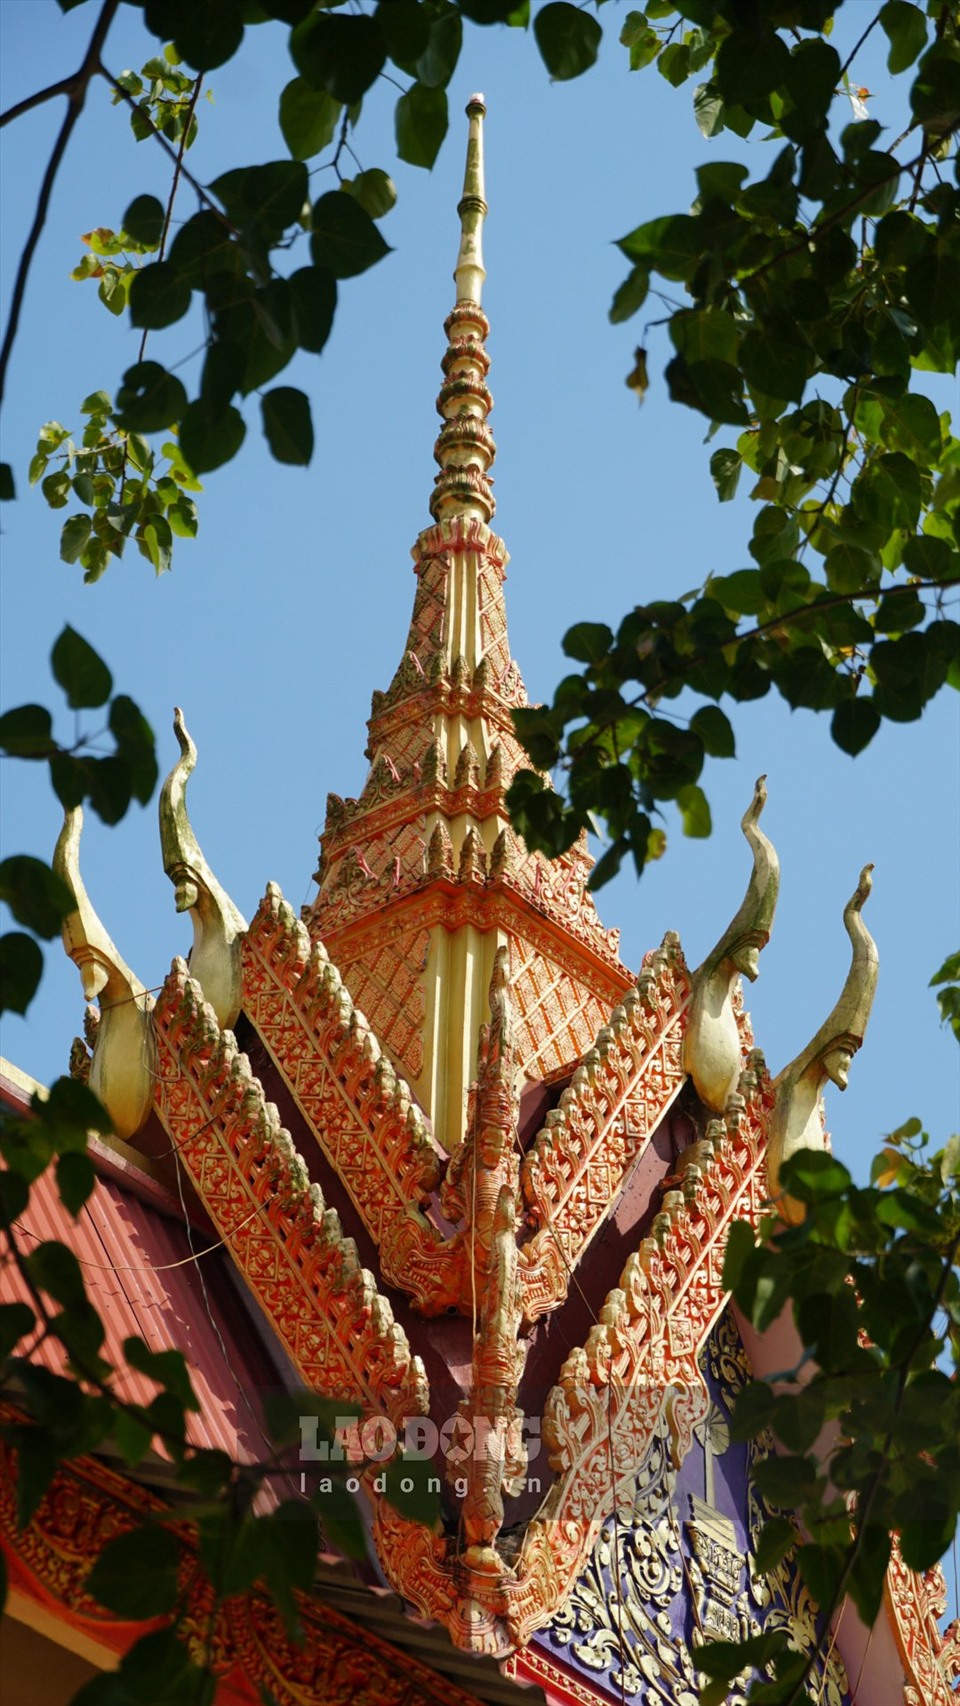 Chol Chnam Thmay là lễ hội mừng năm mới theo lịch cổ truyền của dân tộc Khmer. Ngoài tôn giáo chính là Phật giáo, người Khmer còn tin rằng mỗi năm có một vị thần trên trời (Têvôđa) được sai xuống để chăm lo cho cuộc sống và con người trong năm đó, hết năm lại về trời để vị thần khác xuống hạ giới.